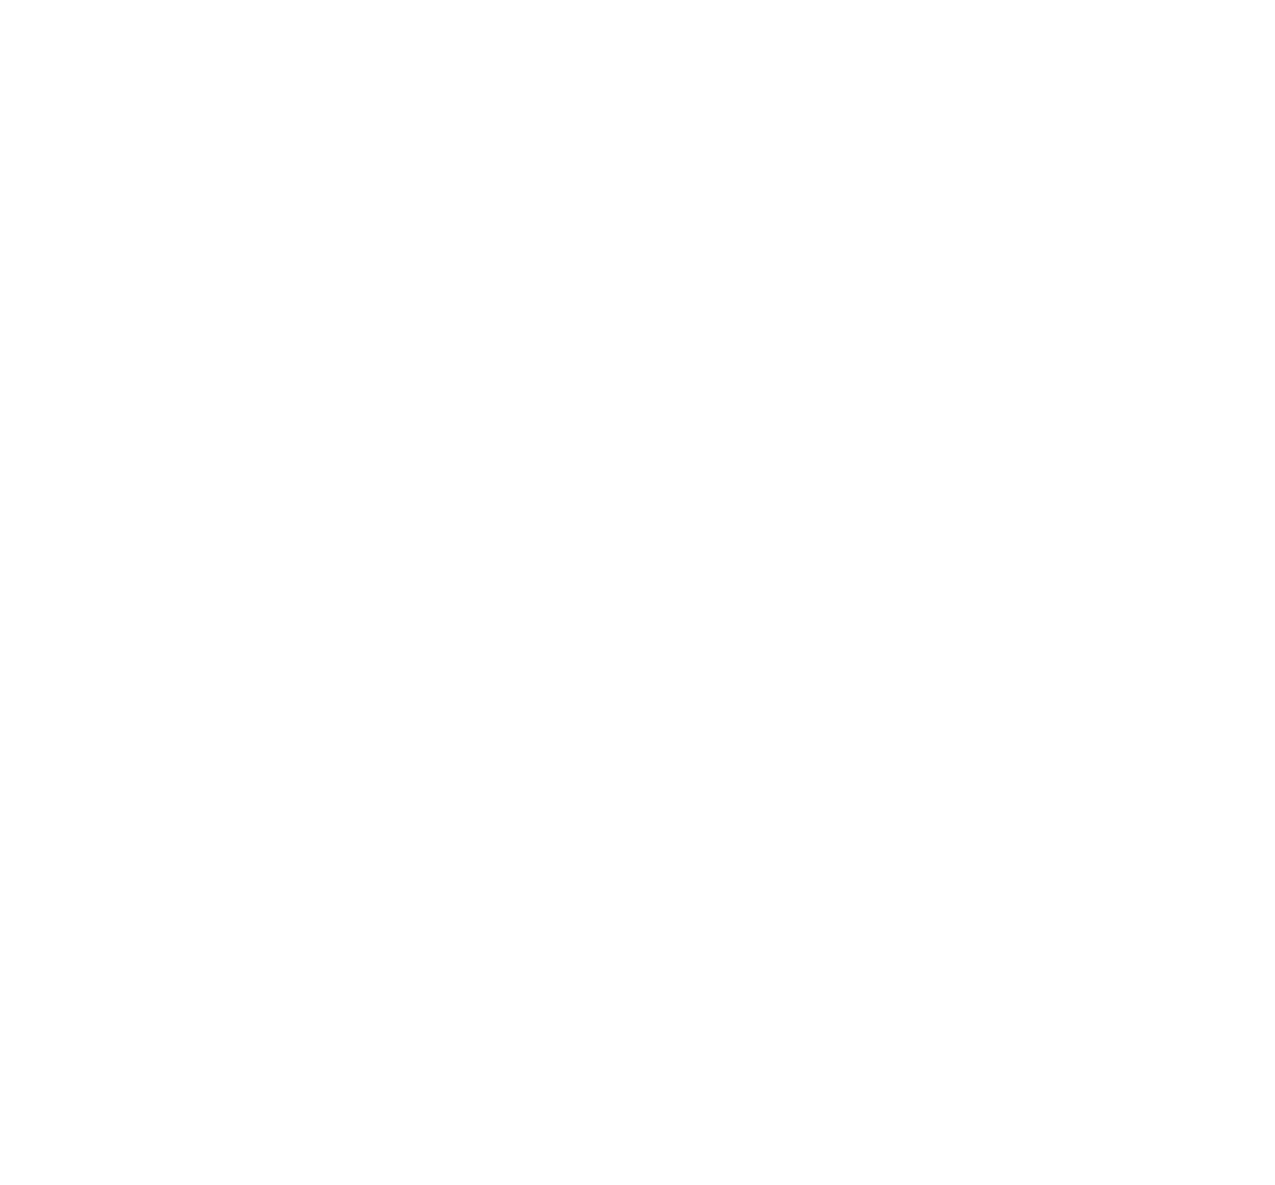 Union Church Millworks